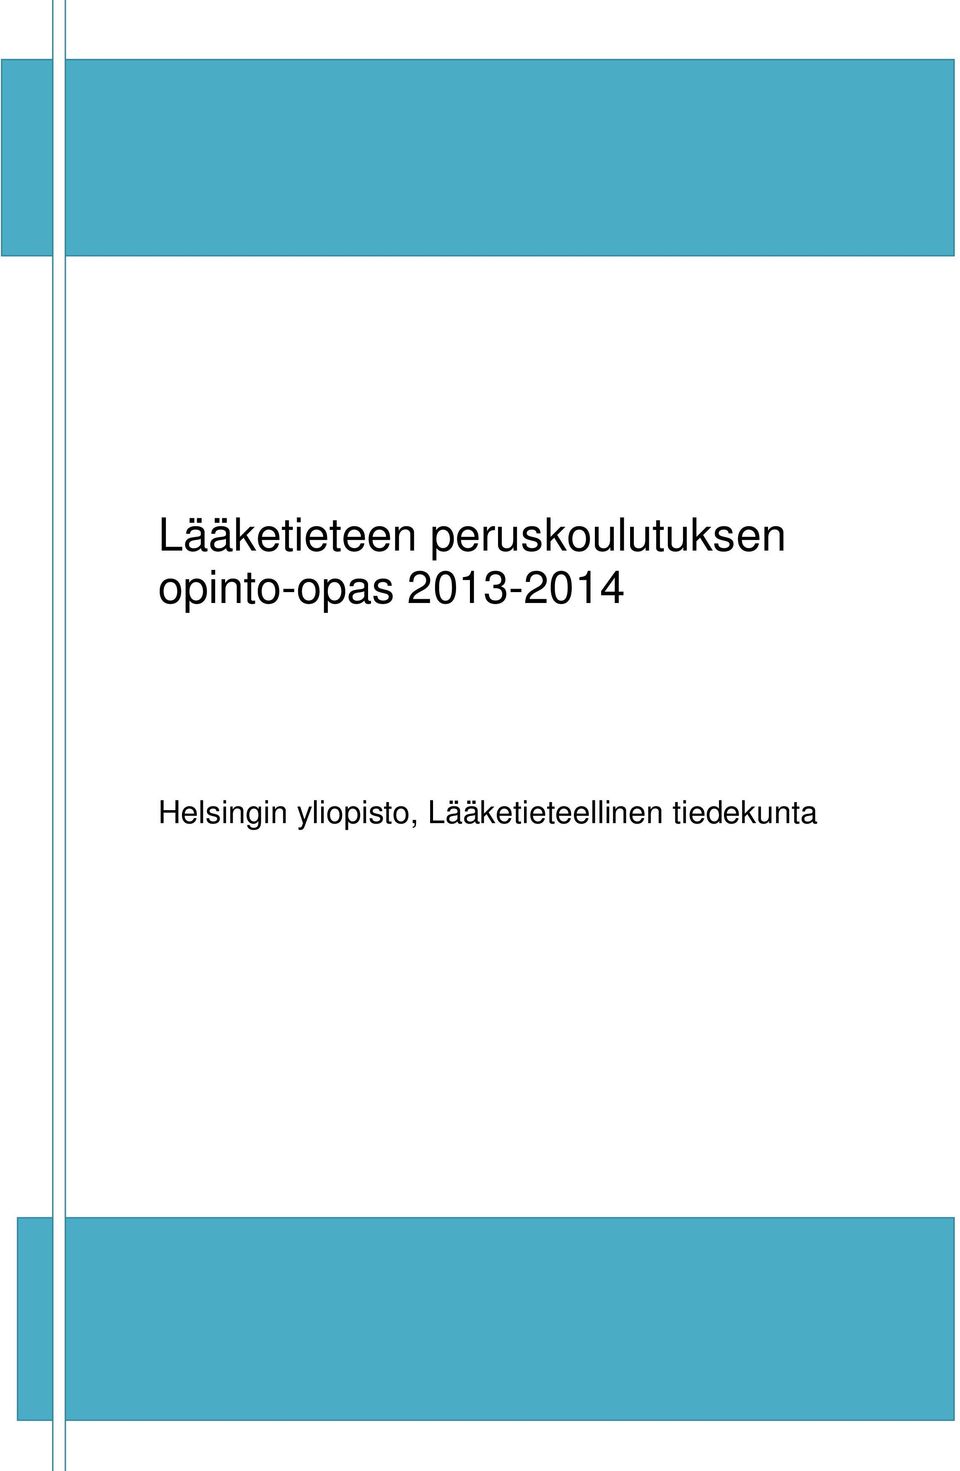 opinto-opas 2013-2014